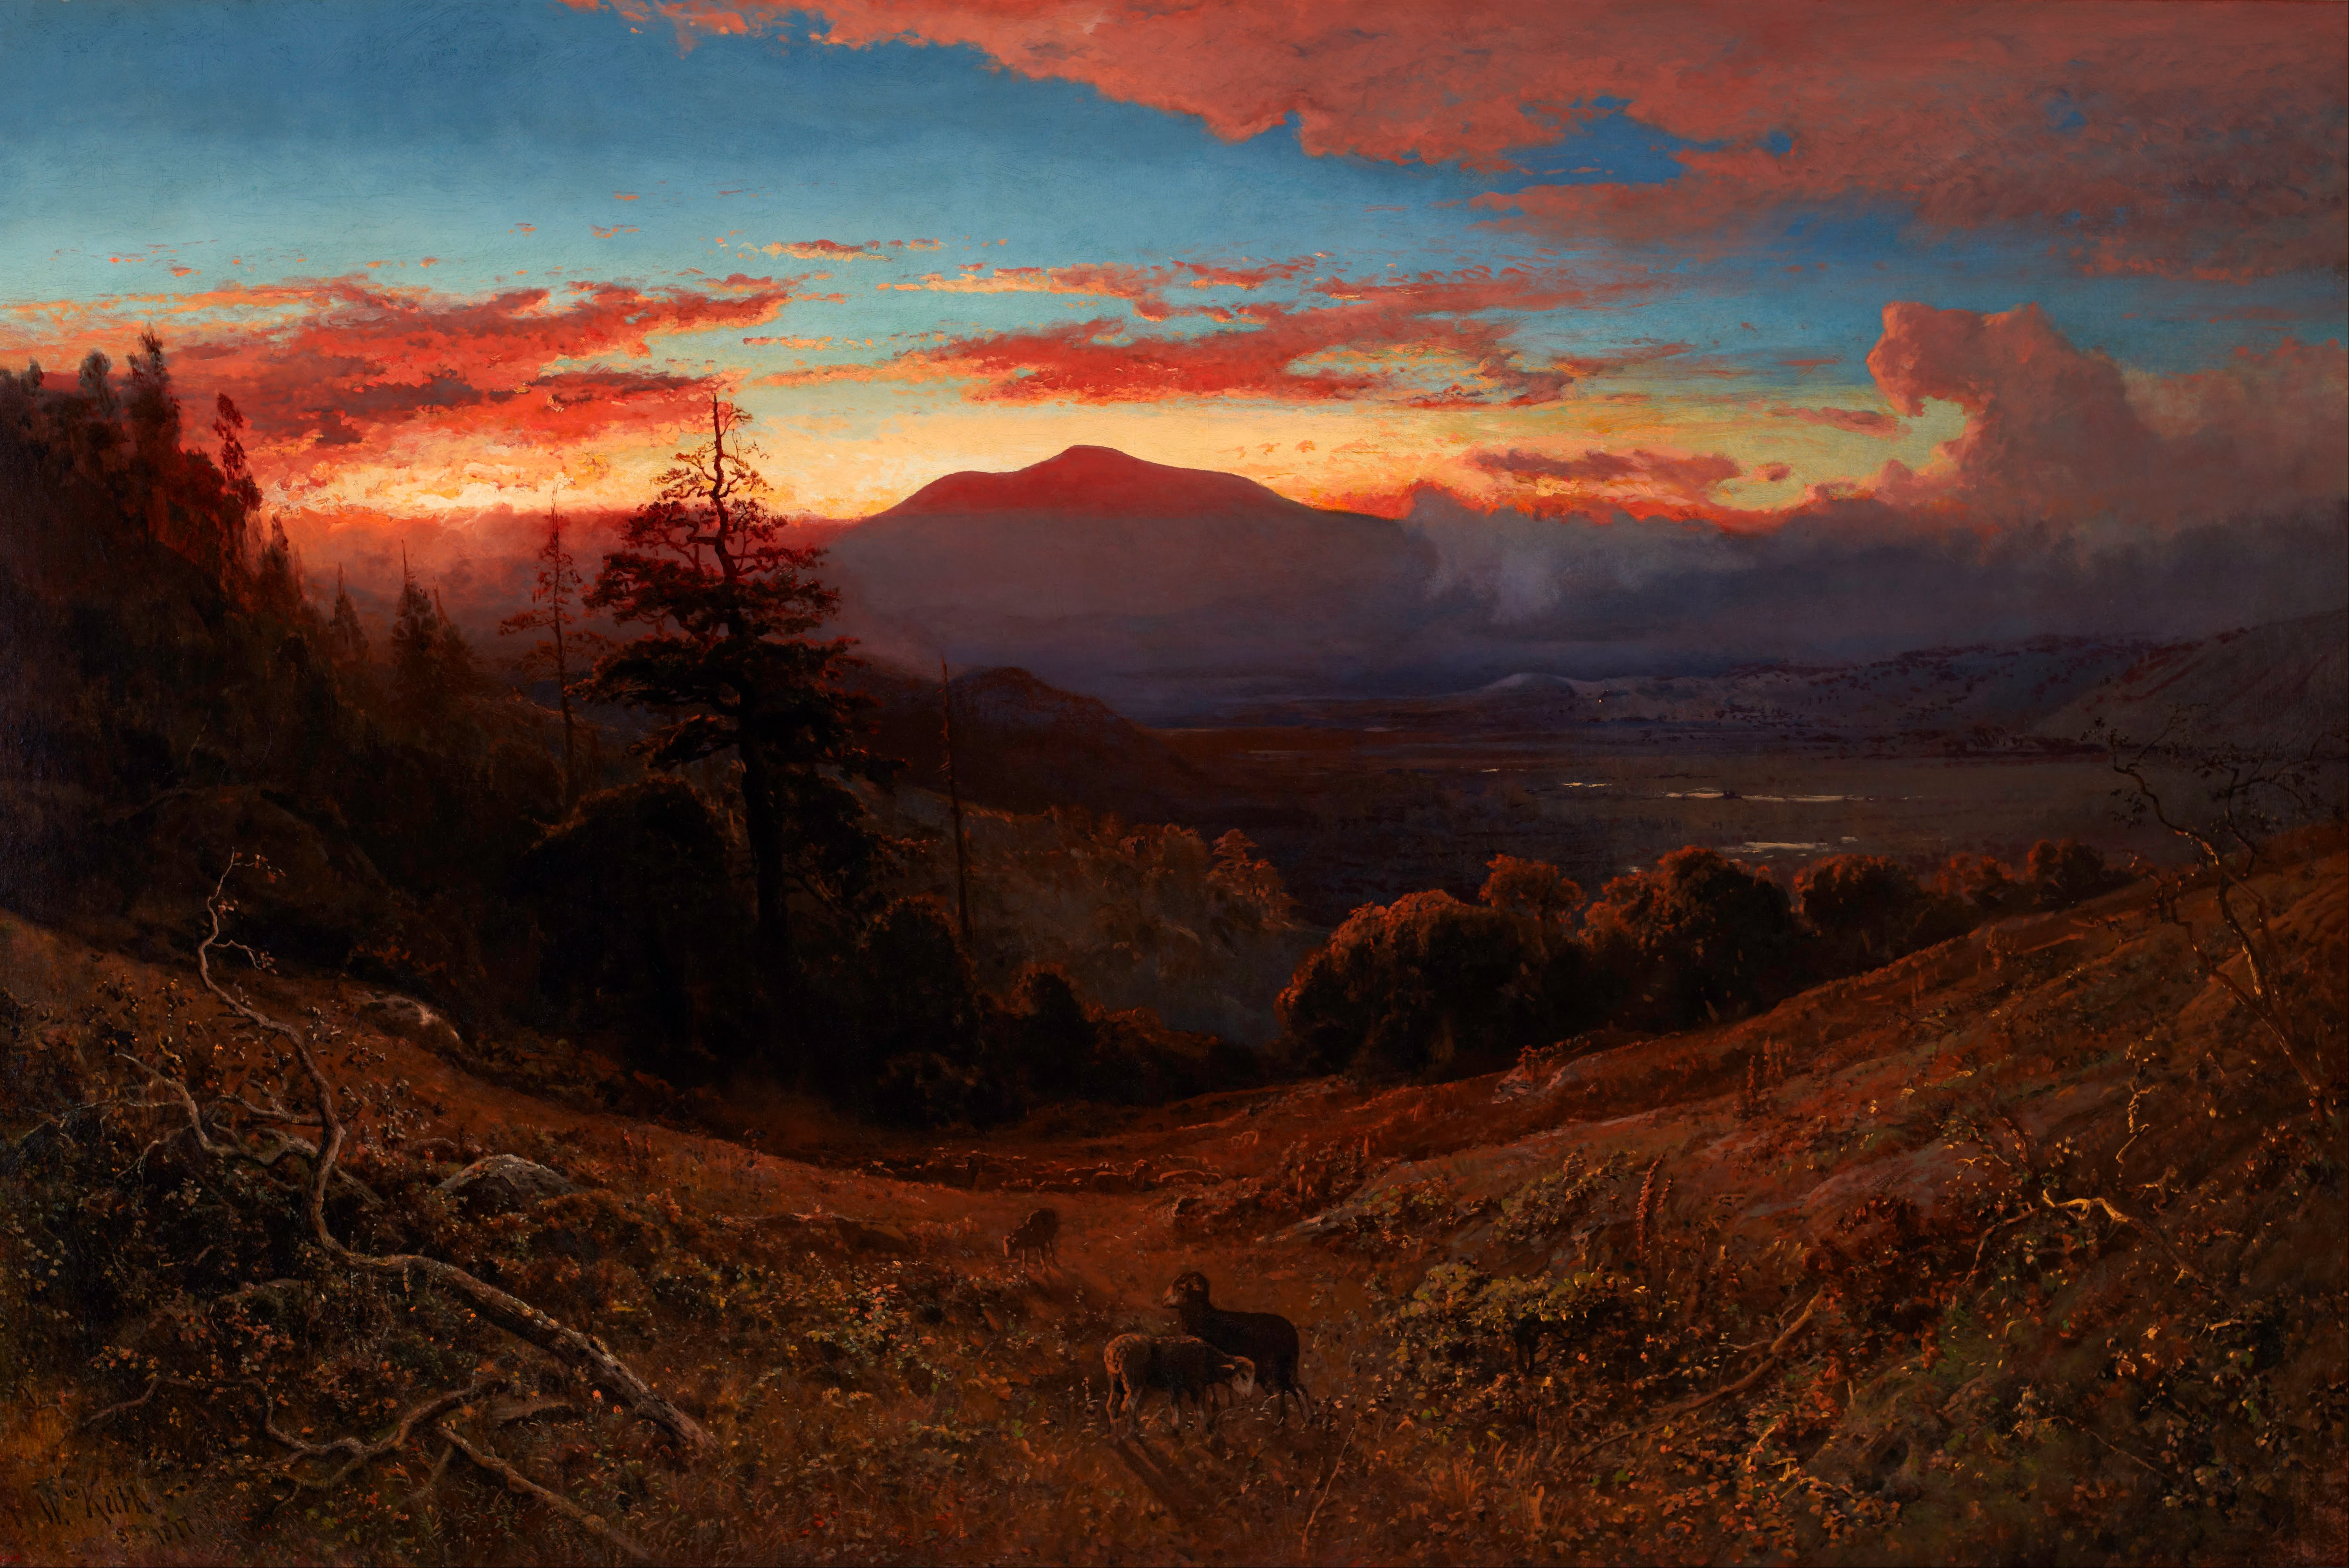 Tramonto sul monte Diablo by William Keith - 1877 - 59 x 39 in 